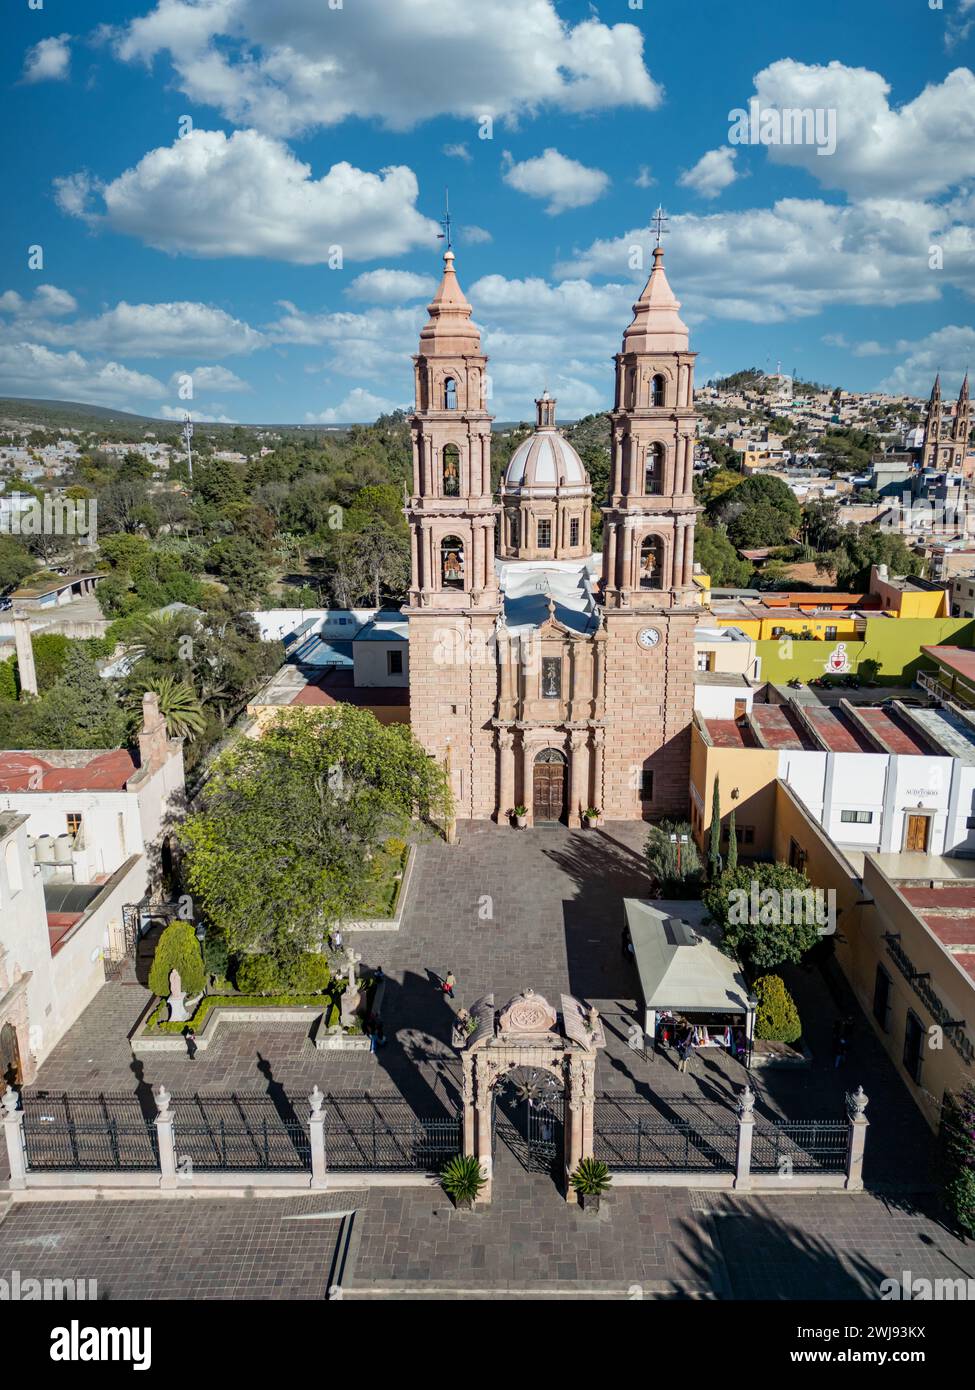 Die große Fassade der Kathedrale von San Luis de La Paz in Guanajuato, die von oben erfasst wurde und die komplexe Architektur und die reiche Geschichte der Stadt hervorhebt Stockfoto